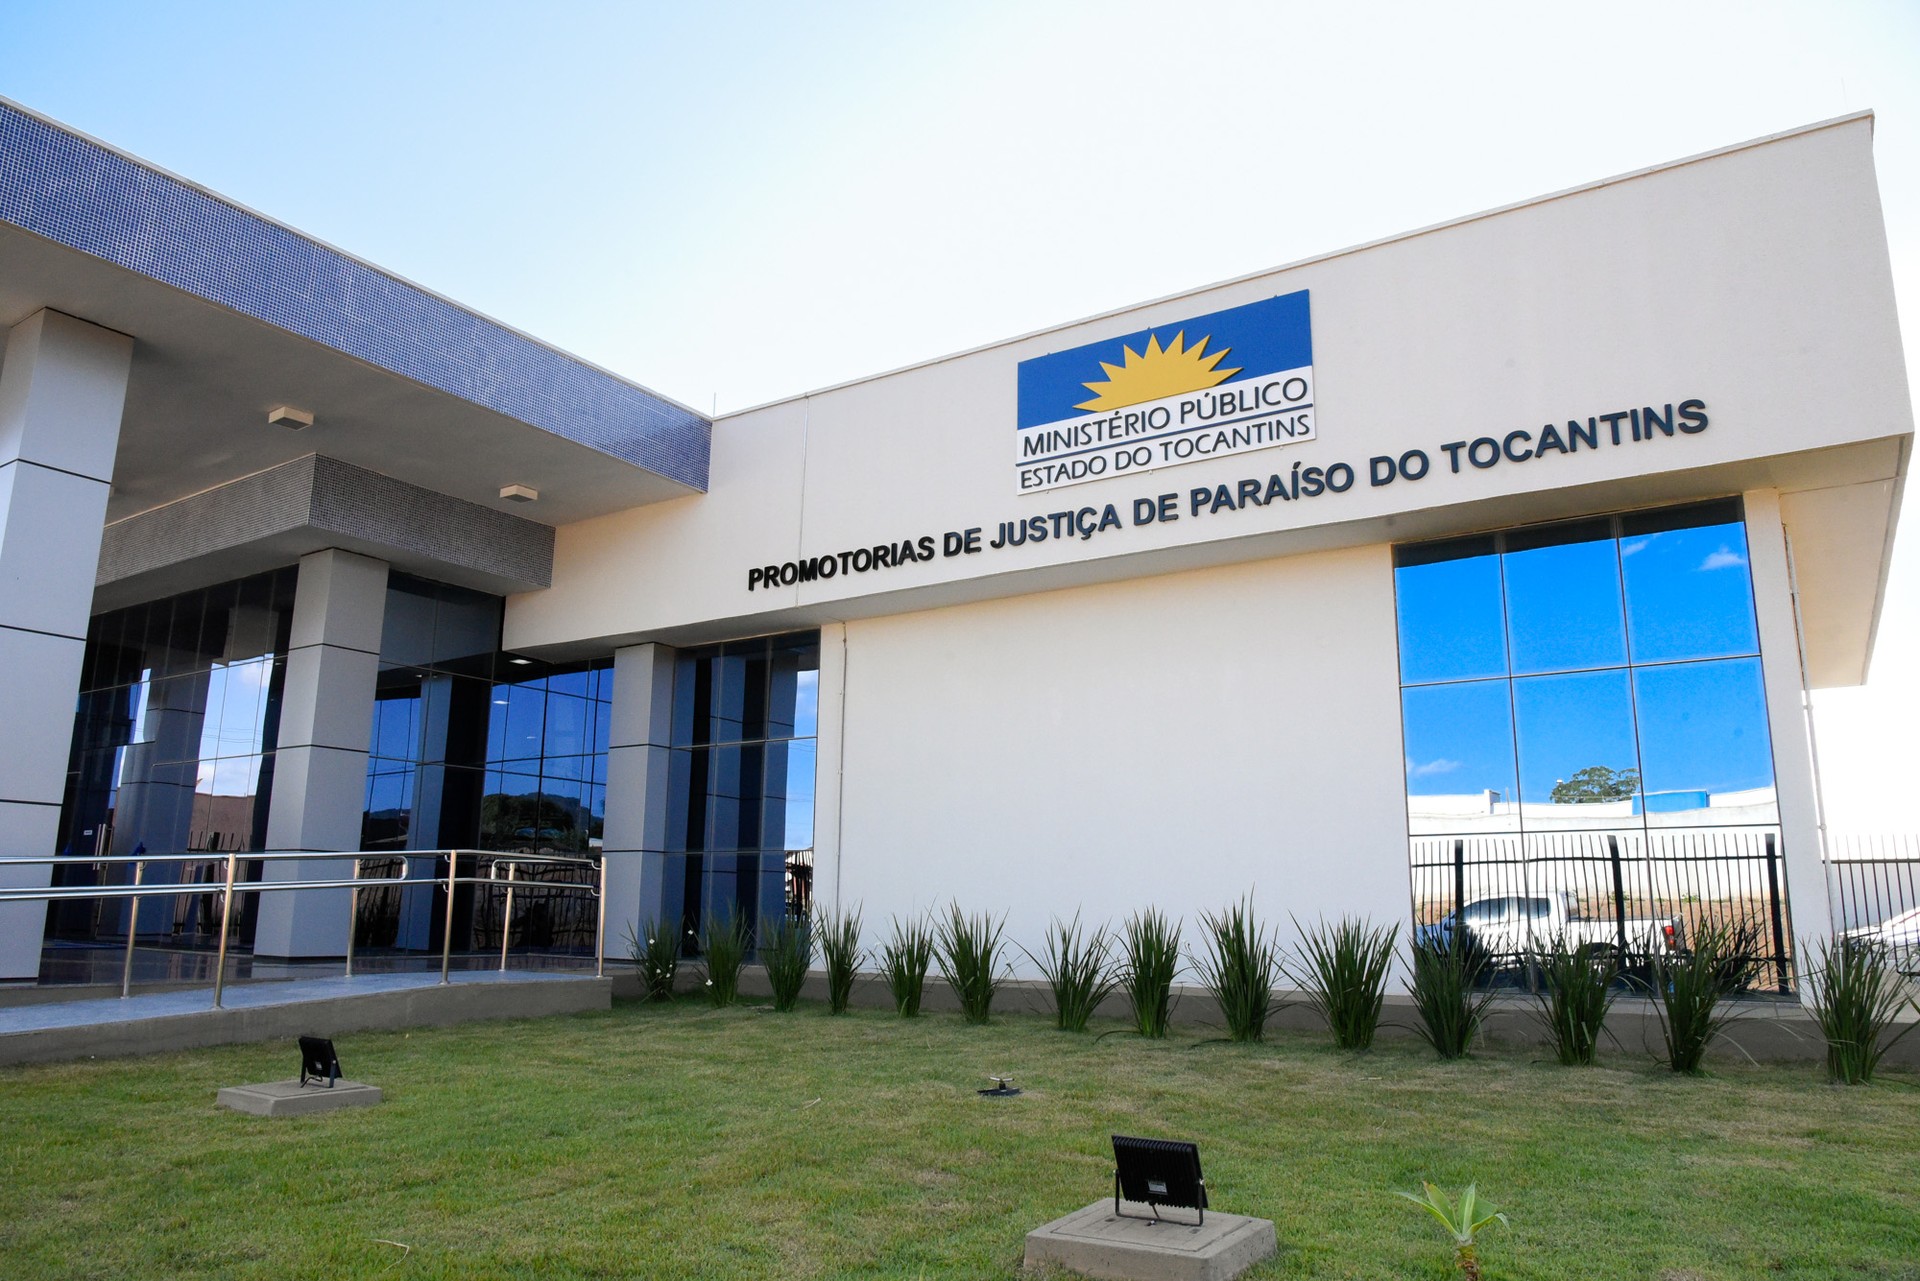 Evento será realizado na Sede das Promotorias de Justiça de Paraíso do Tocantins